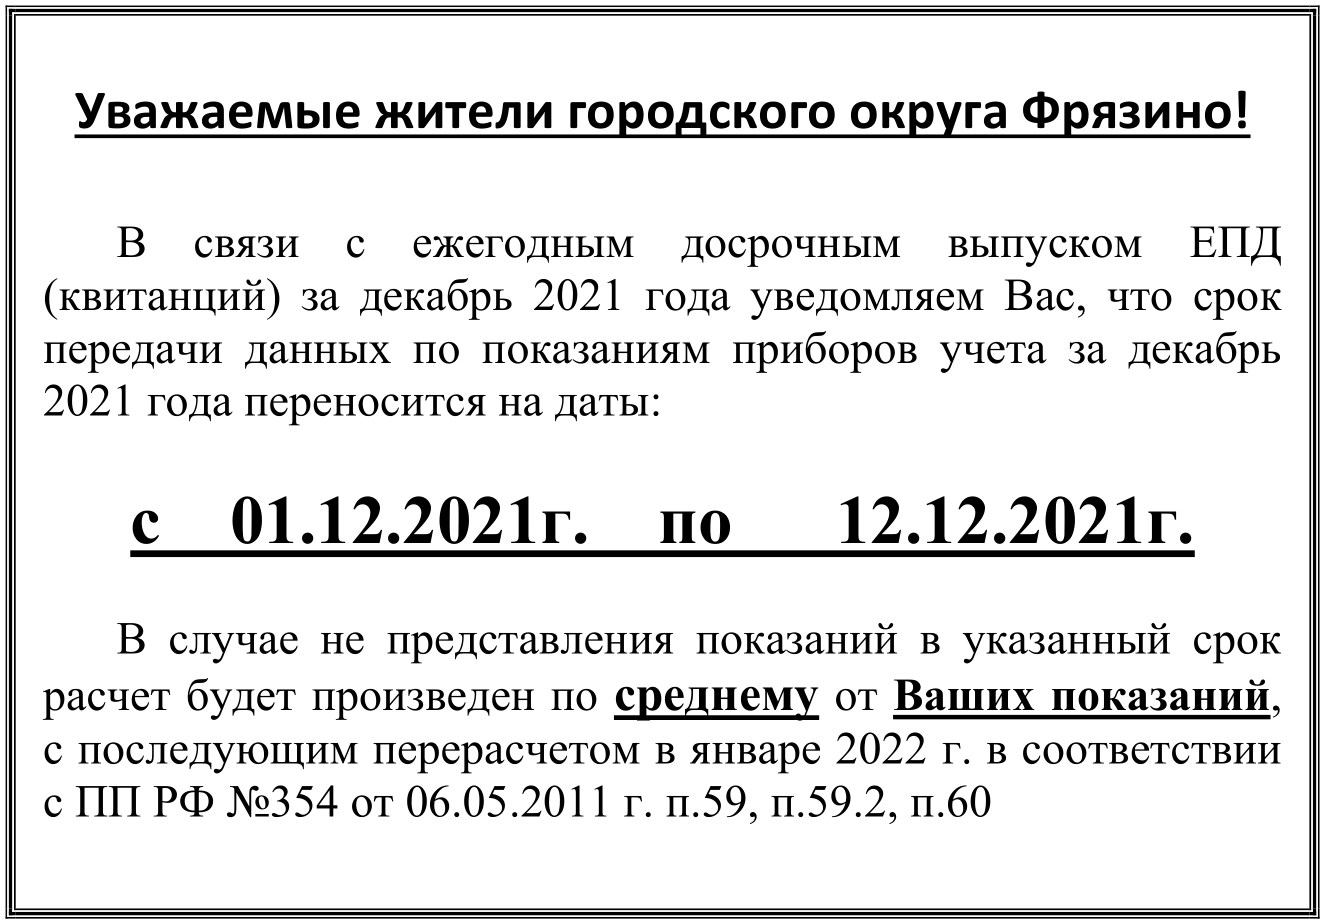 Срок передачи данных по показаниям приборов учета за декабрь 2021 года переносится на даты с 01.12.2021г. по 12.12.2021г.